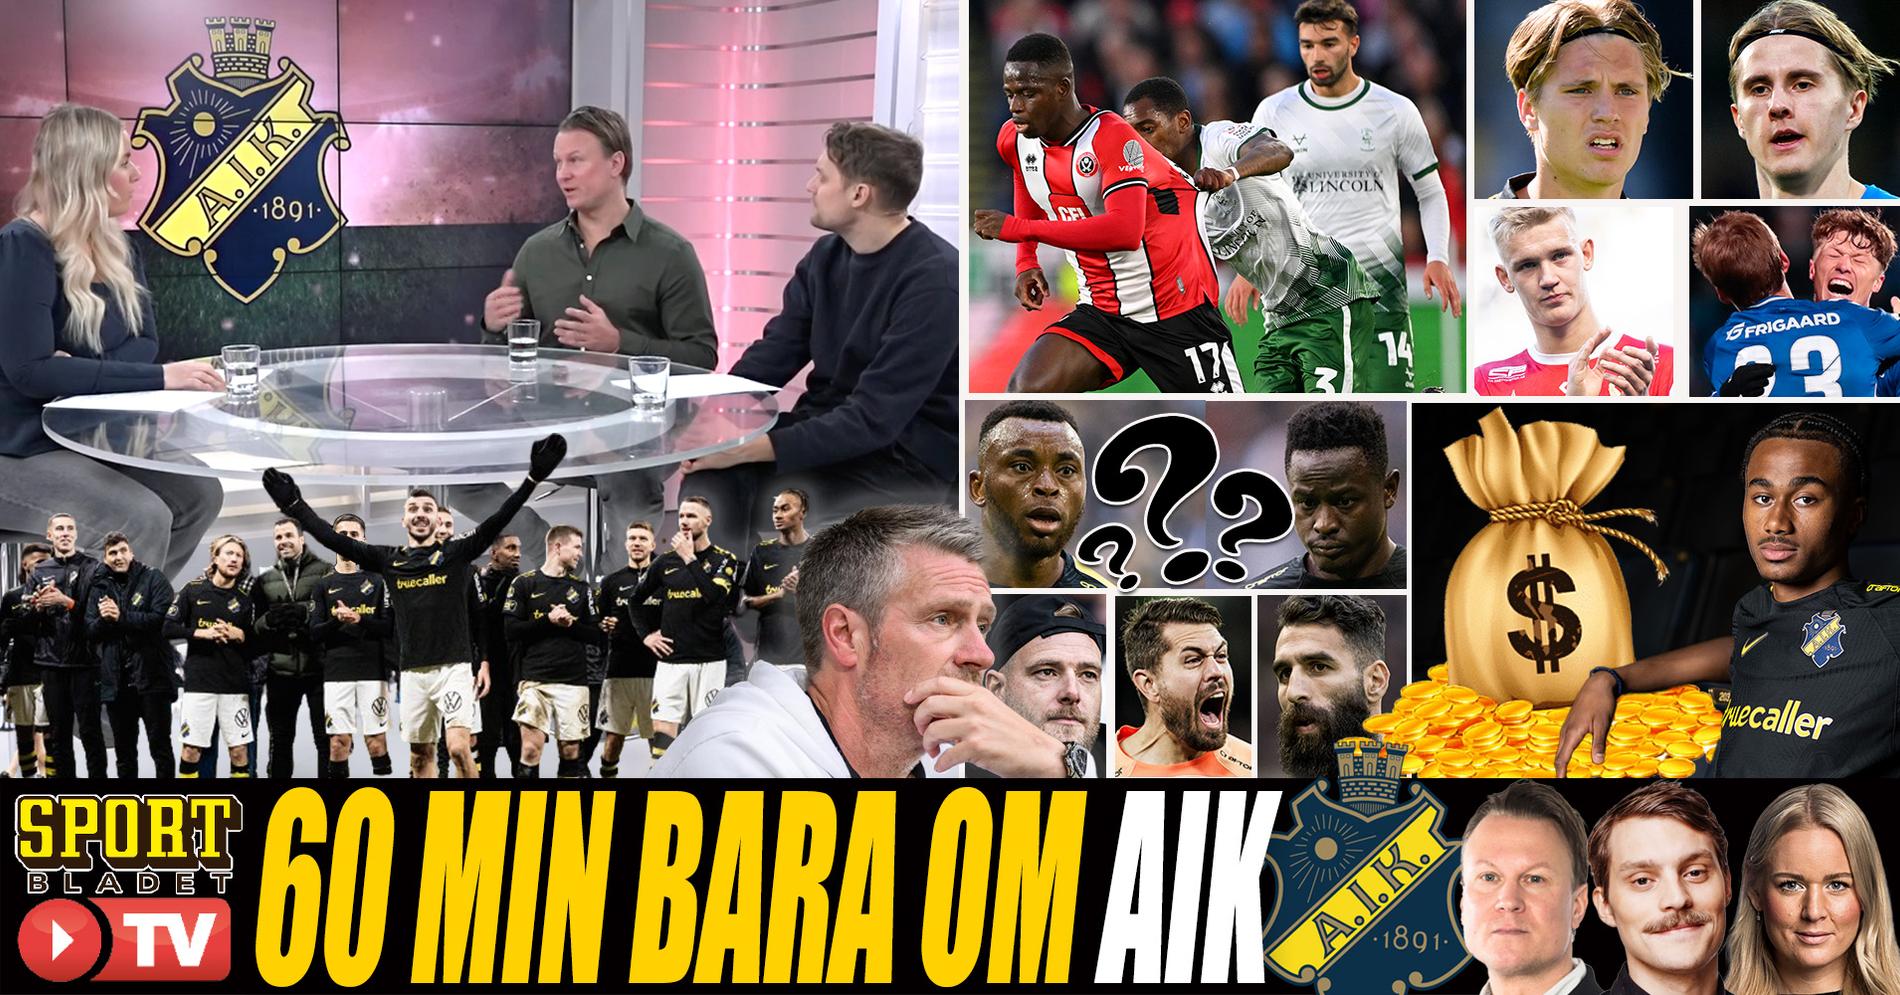 AVSLÖJAR: AIK försöker förstärka med spelare från Premier League - och storklubb jagar löftet